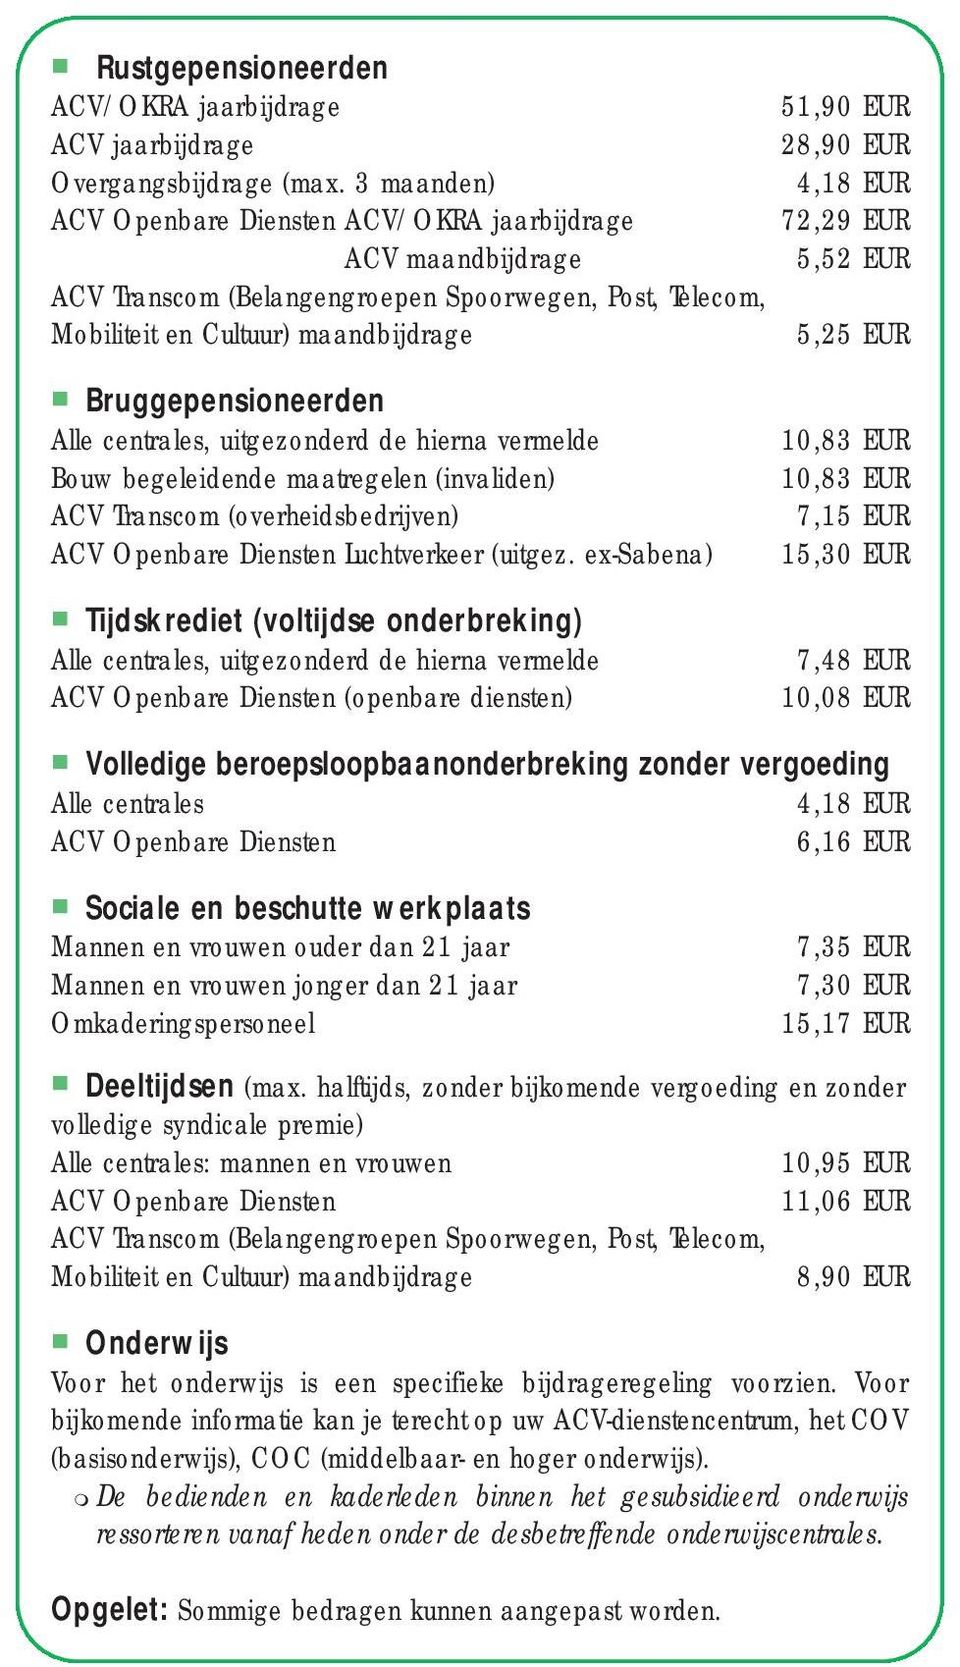 Cultuur) maandbijdrage 5,25 EUR Bruggepensioneerden Alle centrales, uitgezonderd de hierna vermelde Bouw begeleidende maatregelen (invaliden) ACV Transcom (overheidsbedrijven) ACV Openbare Diensten